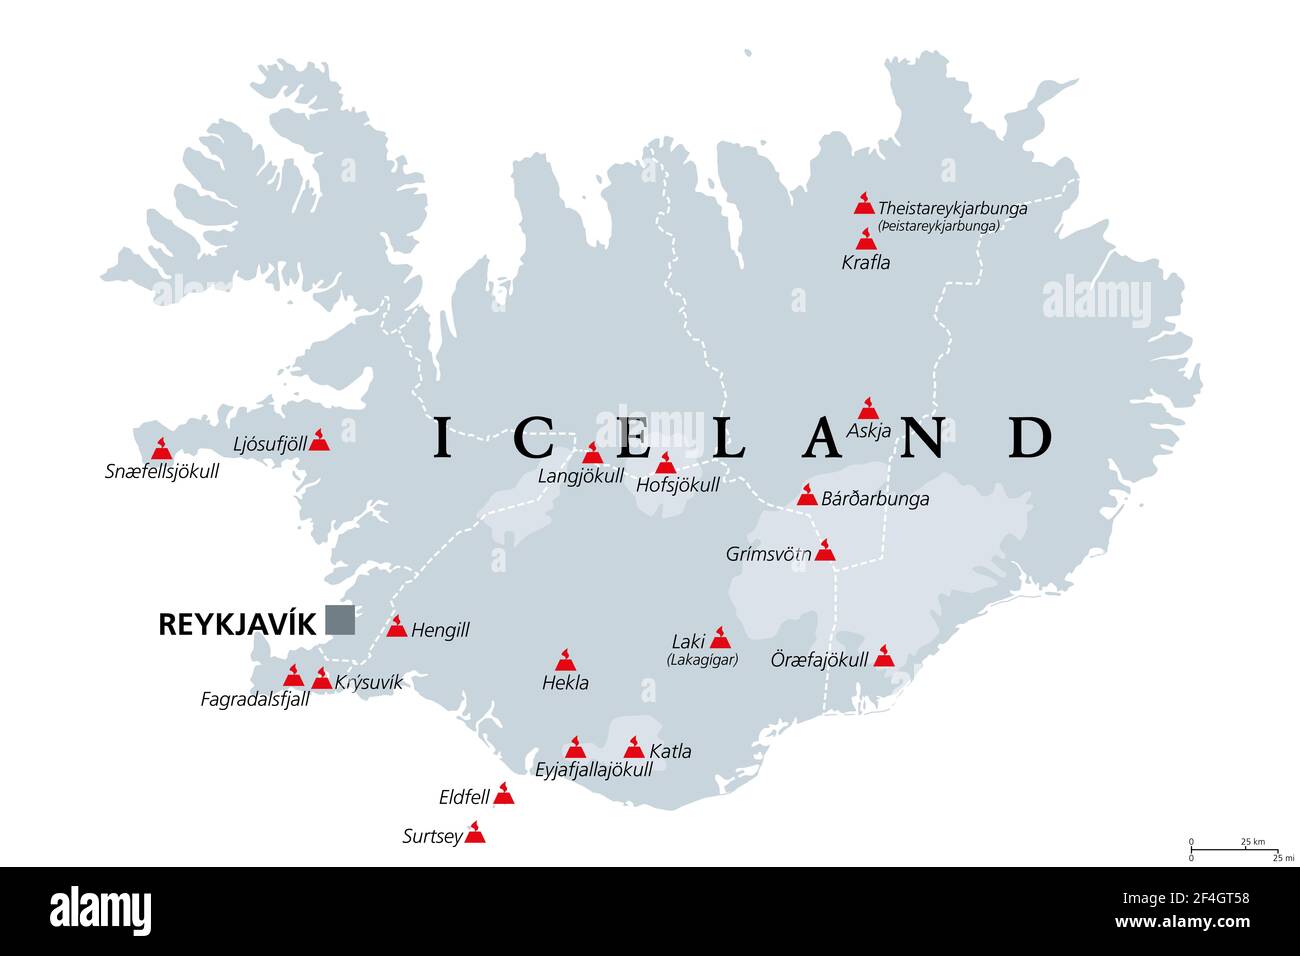 Volcans d'Islande qui ont éclaté depuis la colonisation humaine, carte politique. Dix-huit volcans représentés sur la carte grise de l'Islande, avec des glaciers et des régions. Banque D'Images